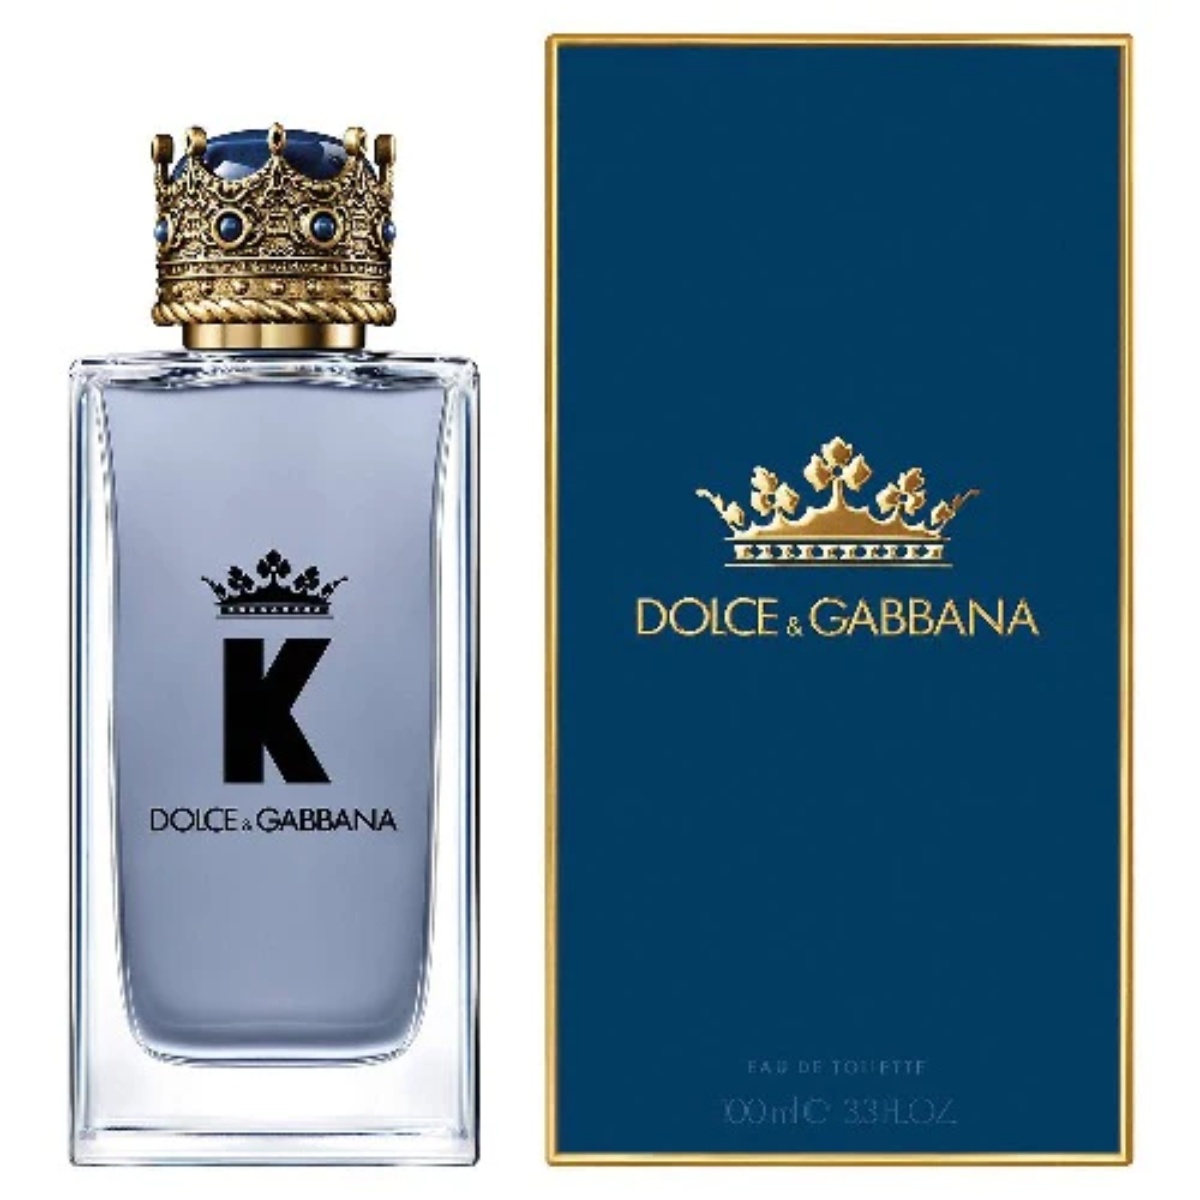 dolce & gabbana perfume hombre Comprar en tienda onlineshoppingcenterg Colombia centro de compras en linea osc